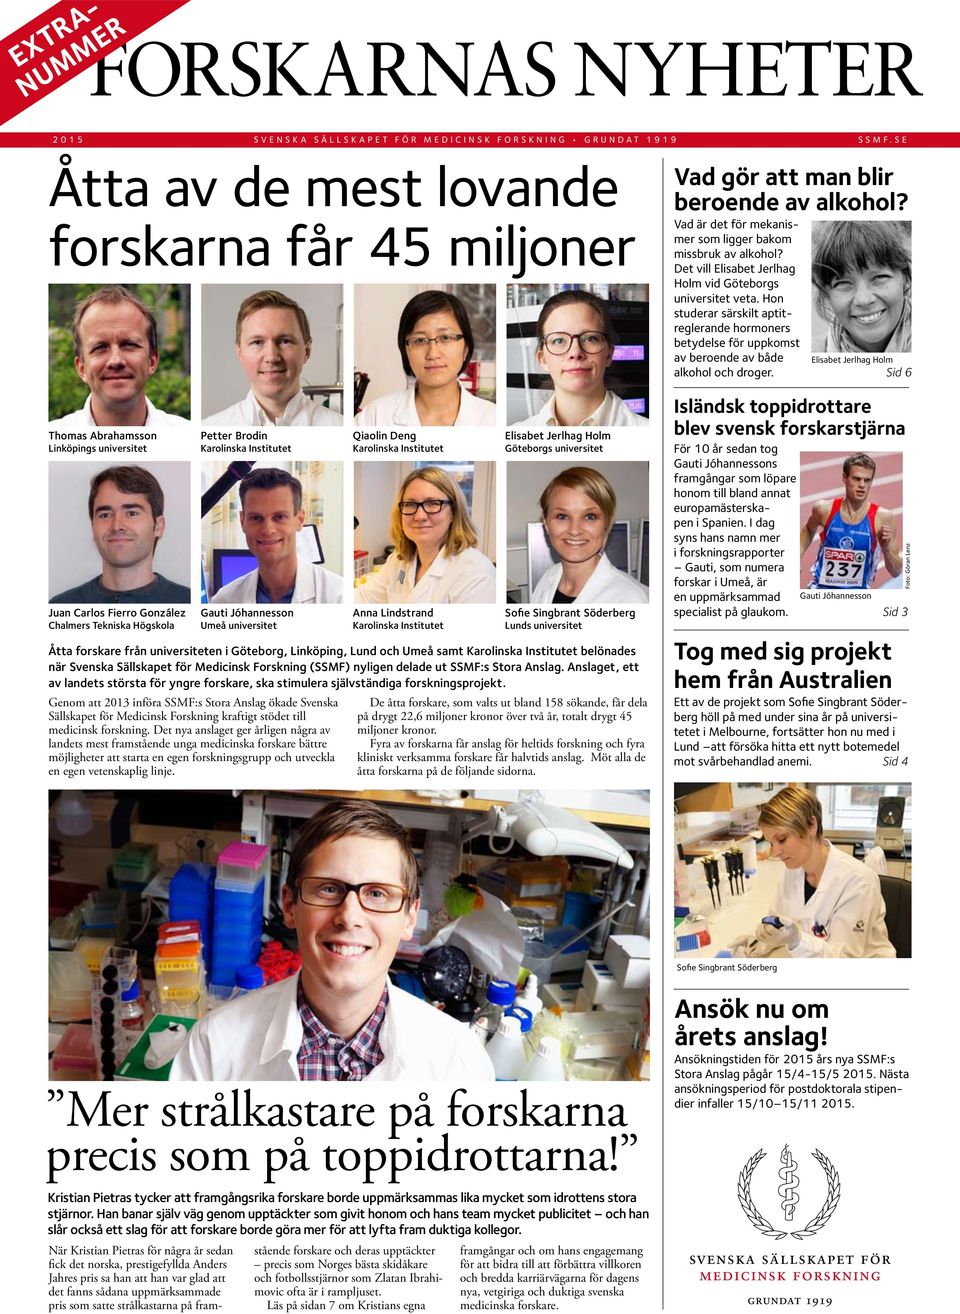 Jóhannesson Umeå universitet Genom att 2013 införa SSMF:s Stora Anslag ökade Svenska Sällskapet för Medicinsk Forskning kraftigt stödet till medicinsk forskning.